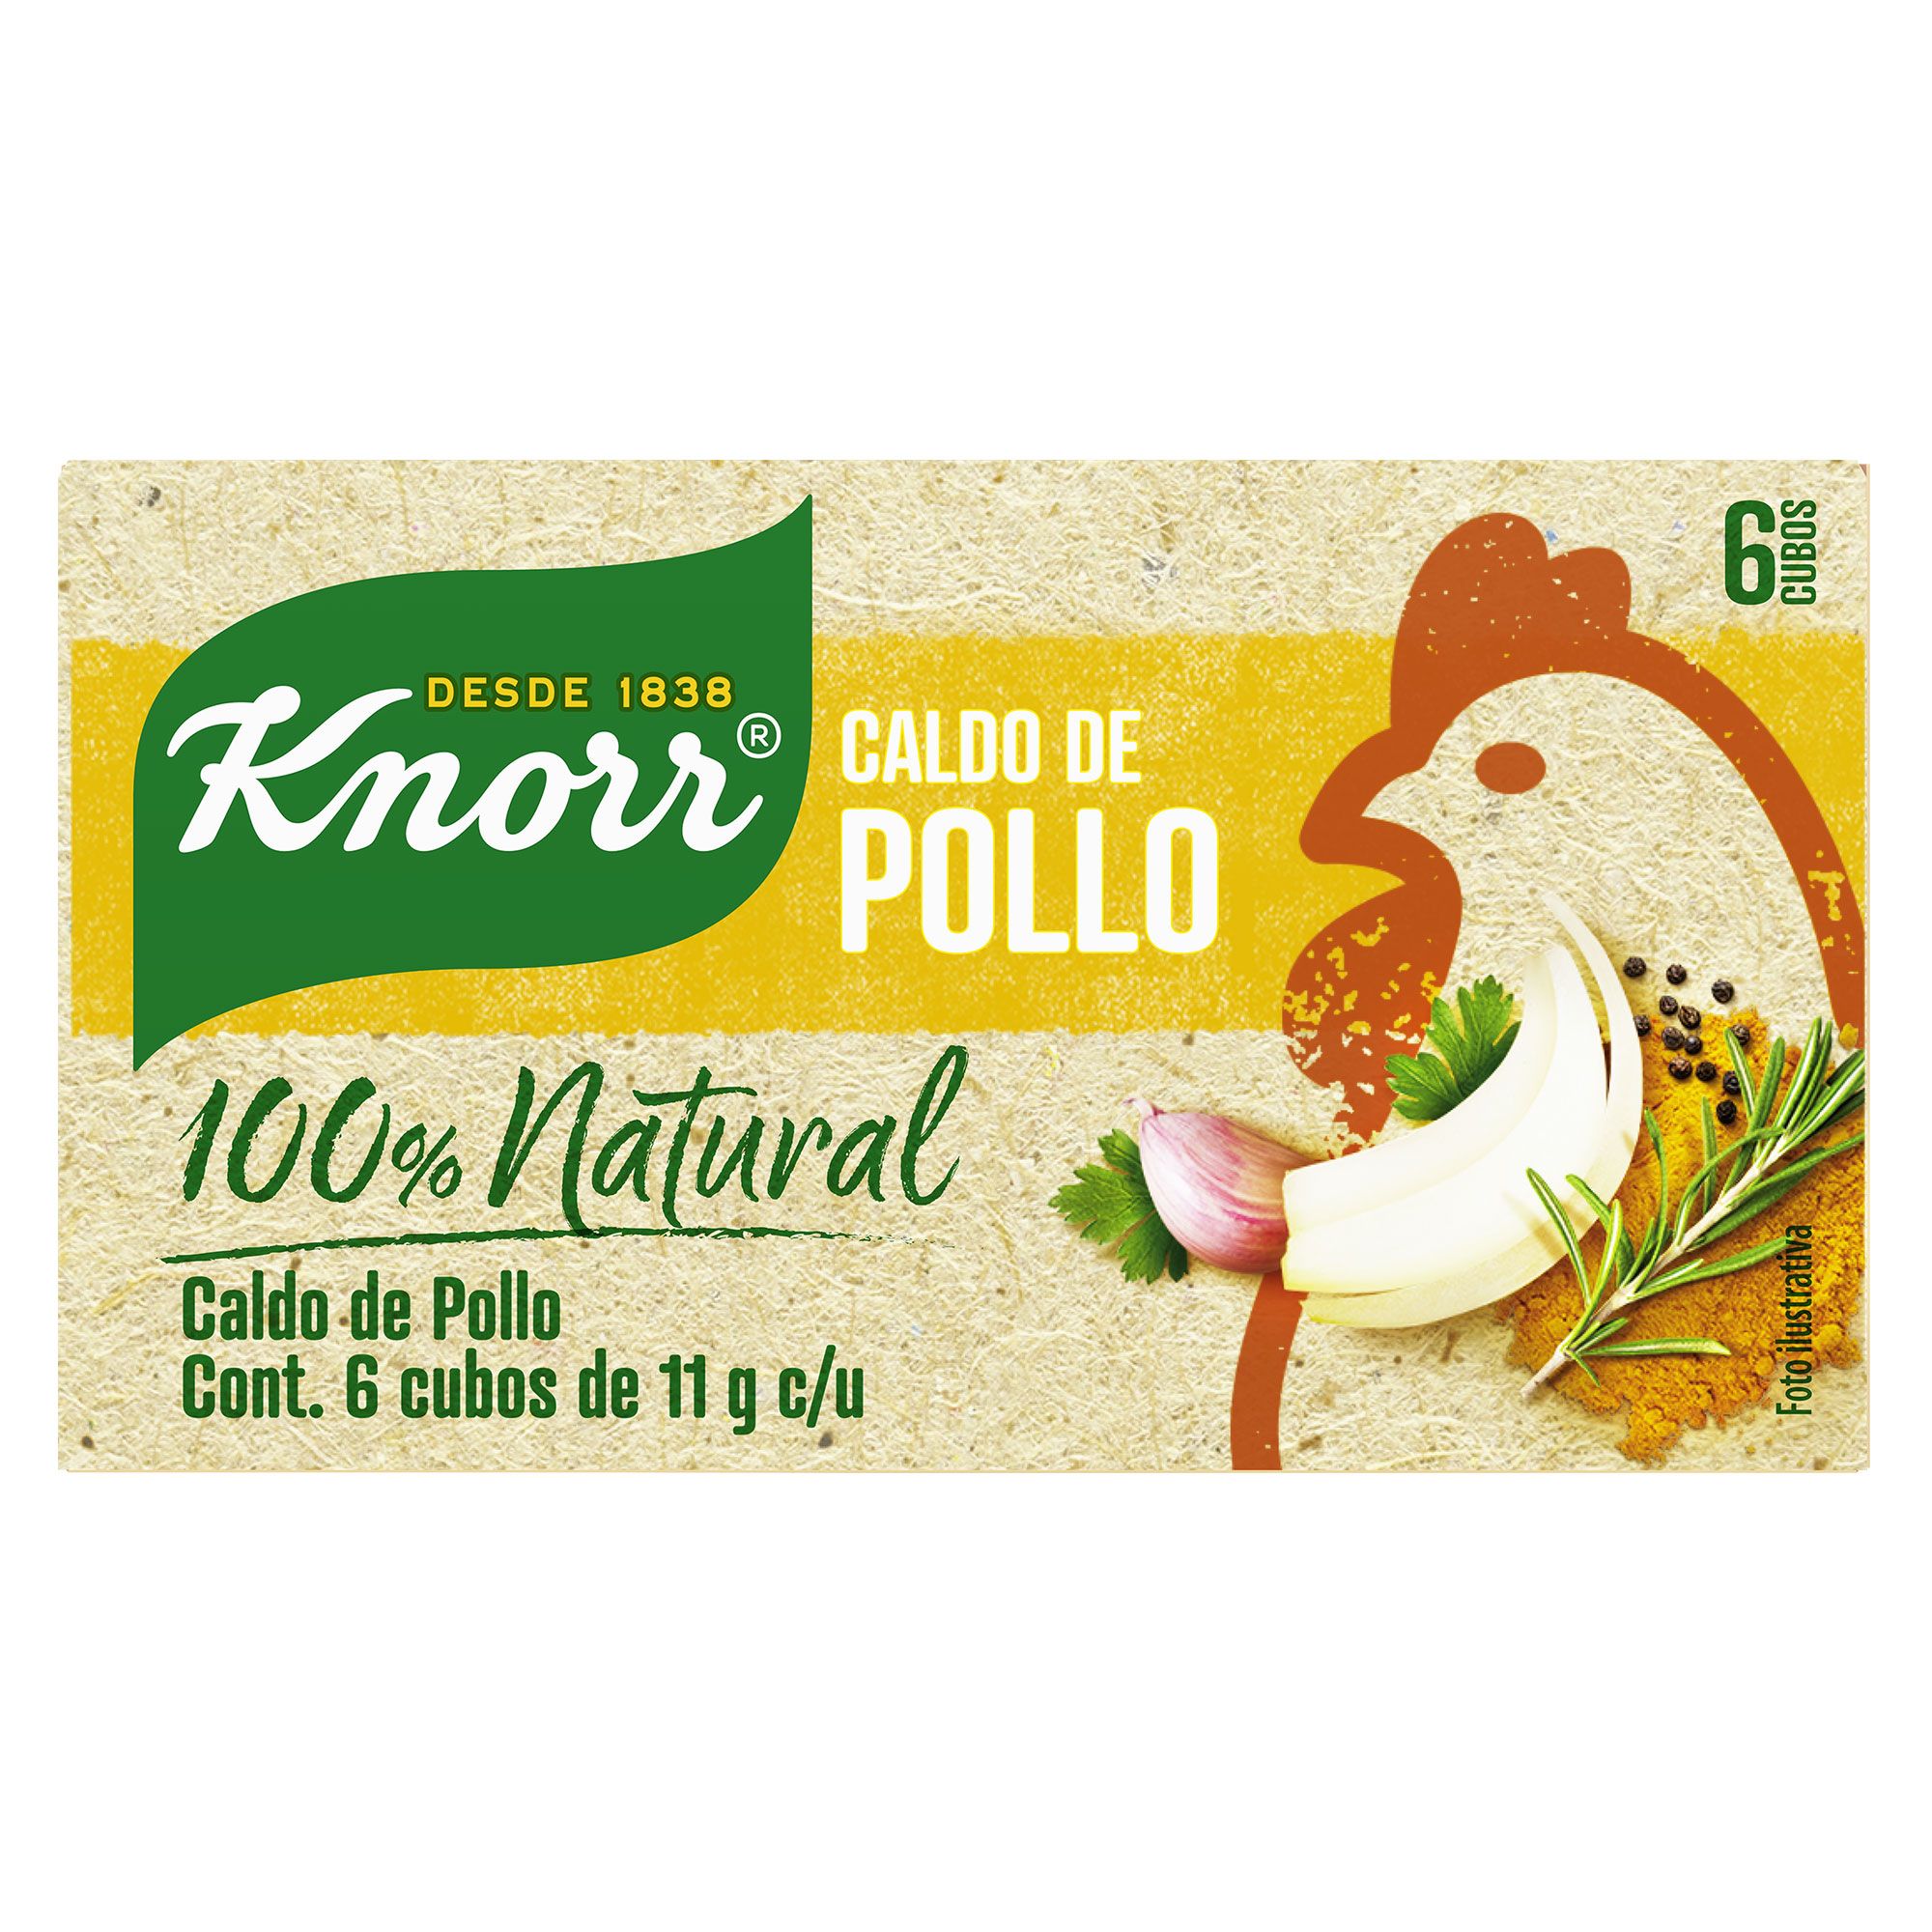 Caldo de Pollo Knorr® 100% Natural 6 cubos